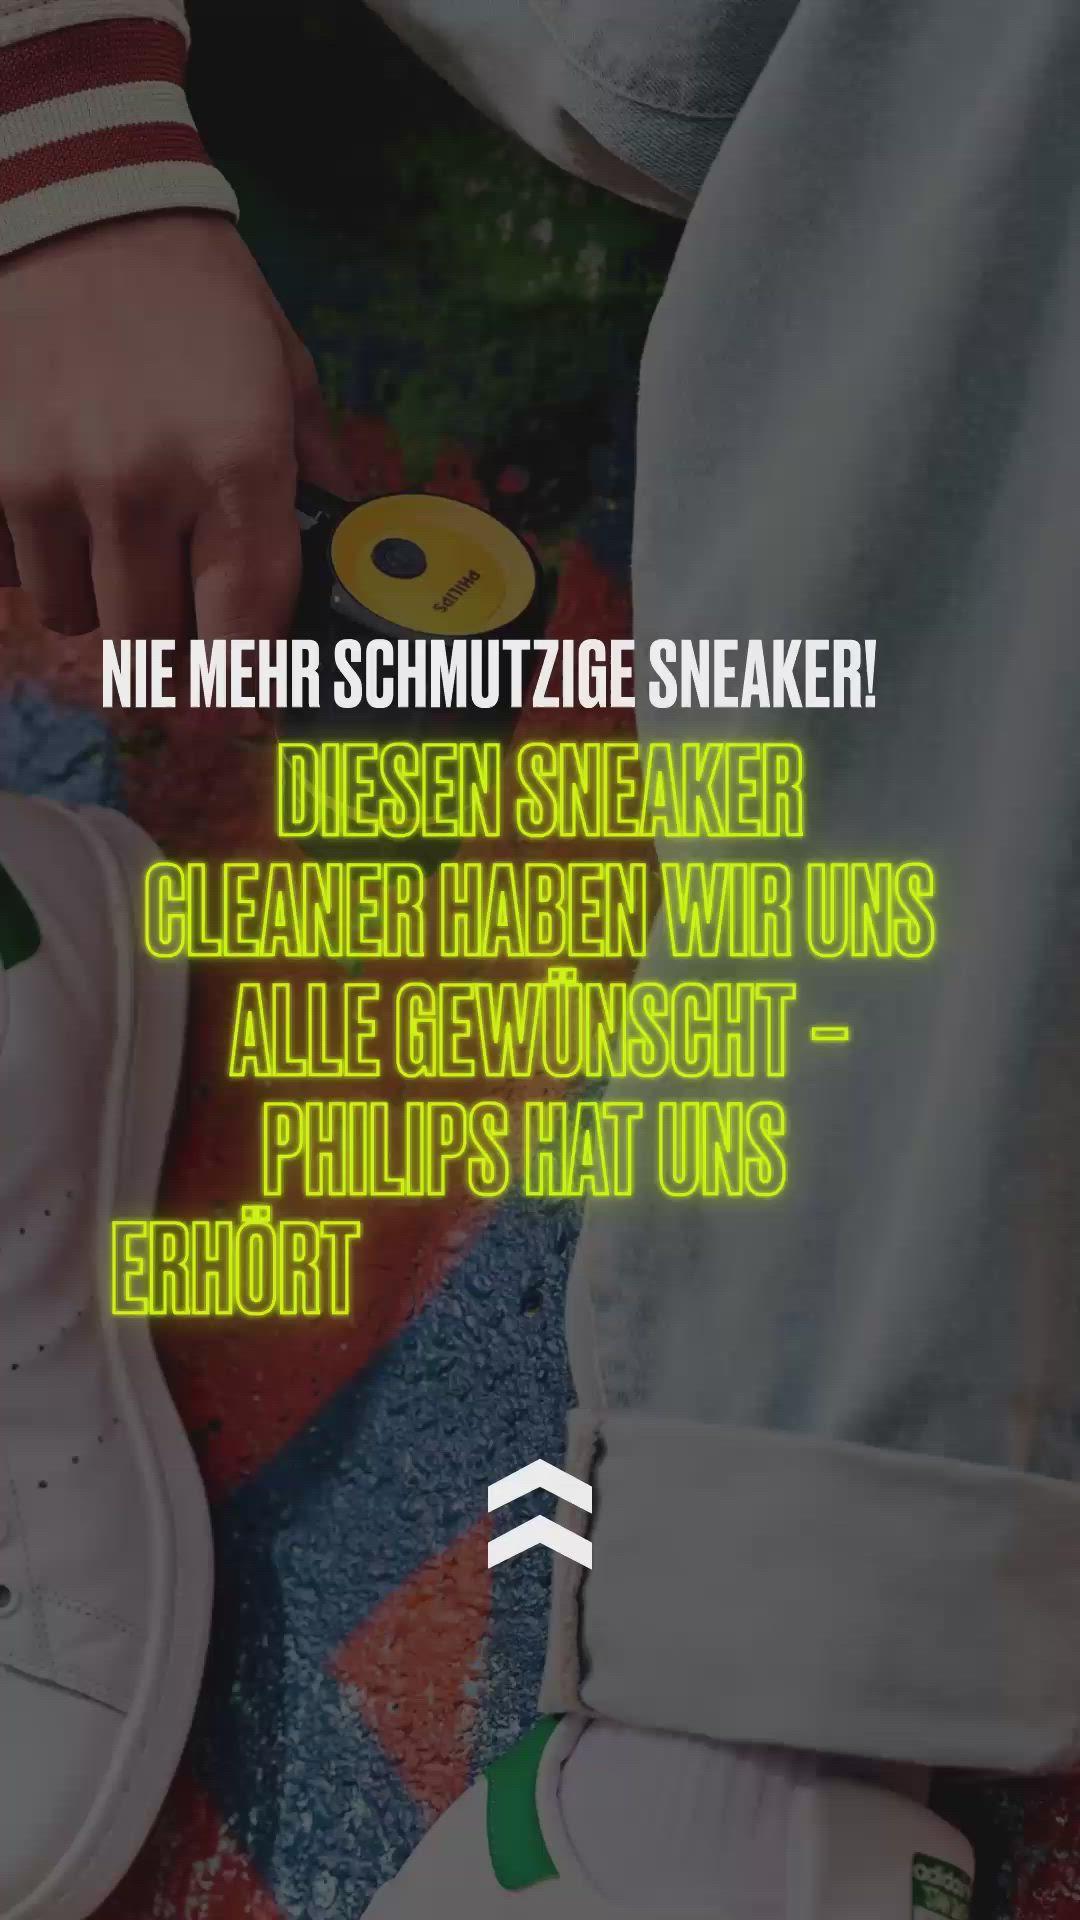 Diesen Sneaker Cleaner haben wir uns alle gewünscht – Philips hat uns erhört 